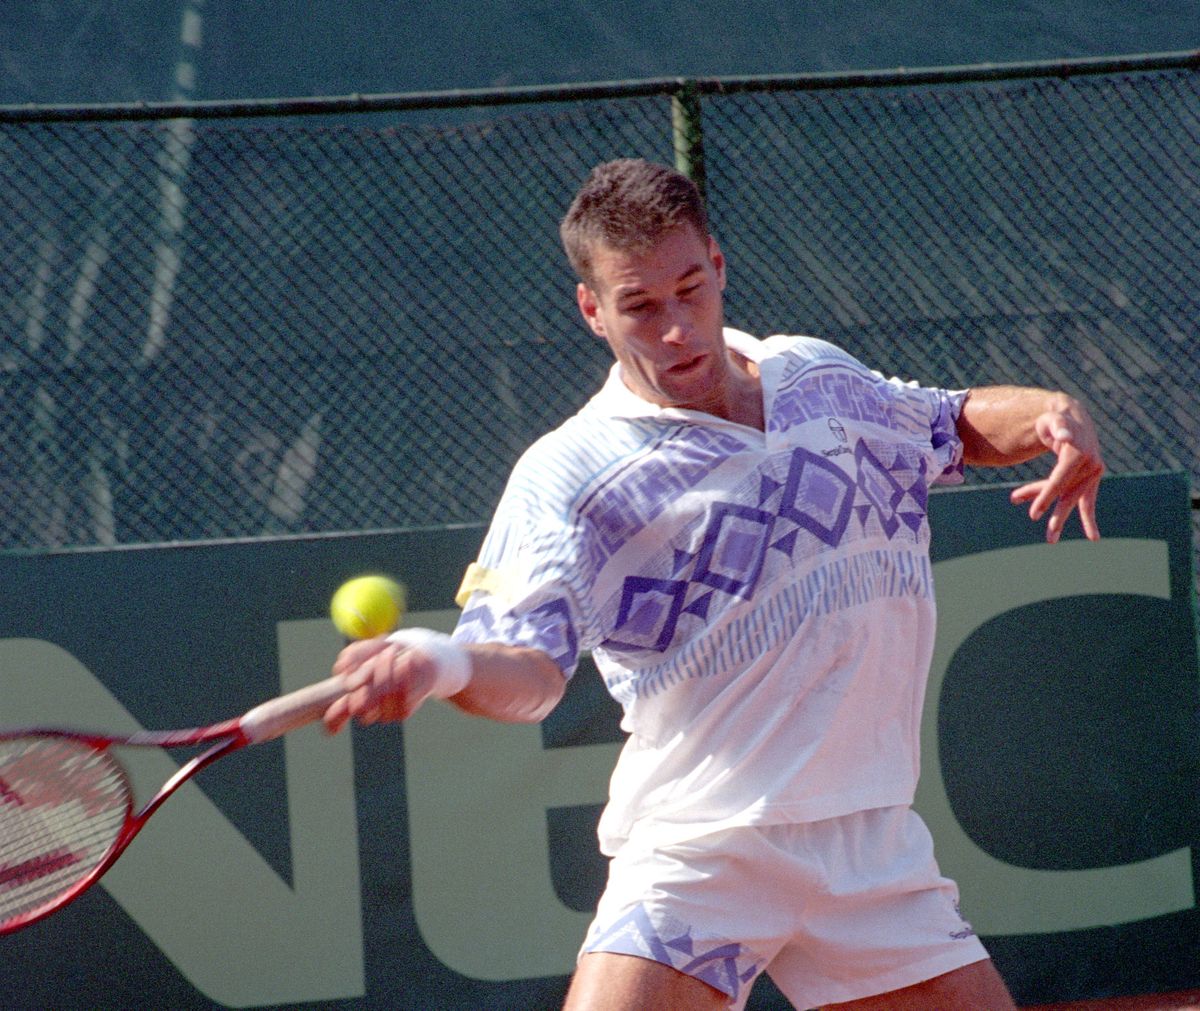 Magyarország – Argentína tenisz Davis-kupa mérkőzés első napja a Margitszigeten 1993. szeptember 24-én. Noszály Sándor győz az első mérkőzésen Perez Roldan ellen. MTI Fotó: Németh Ferenc